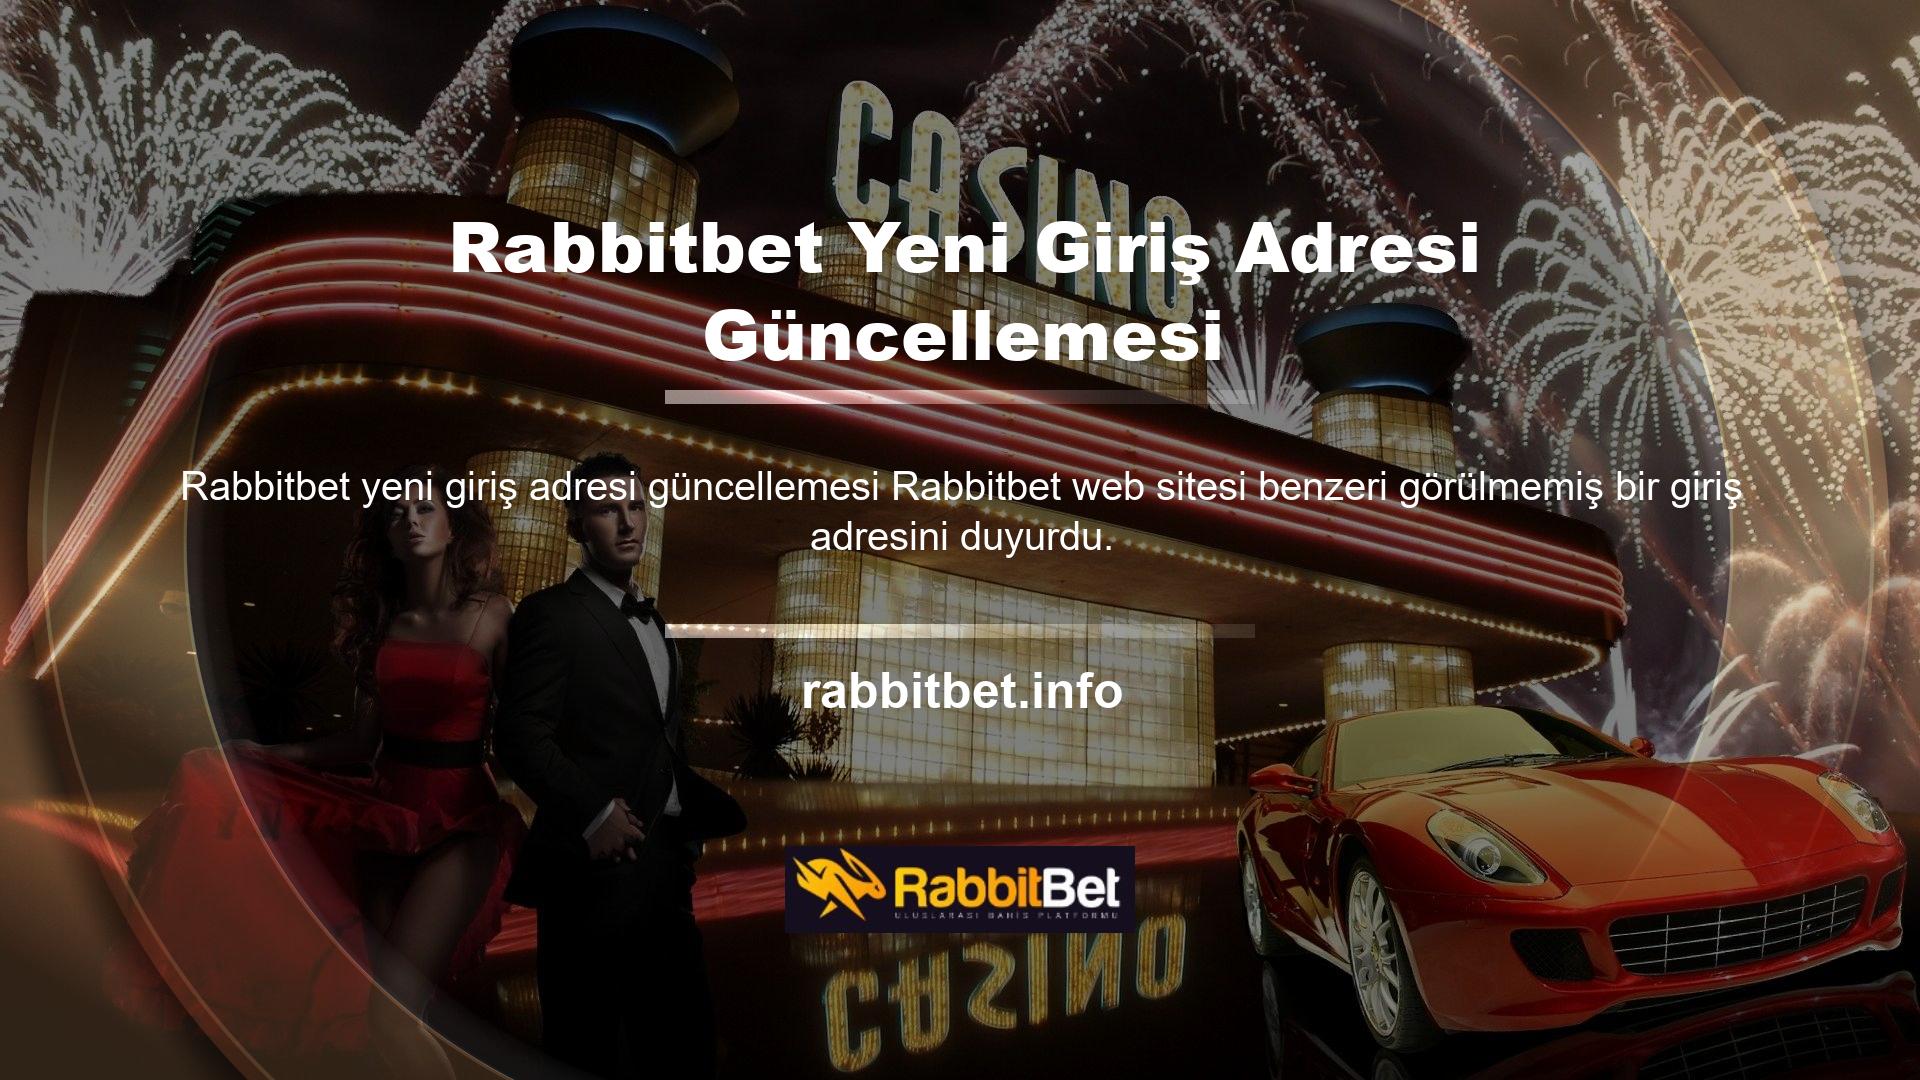 Rabbitbet bahis sitelerine kolay erişim için giriş adresidir